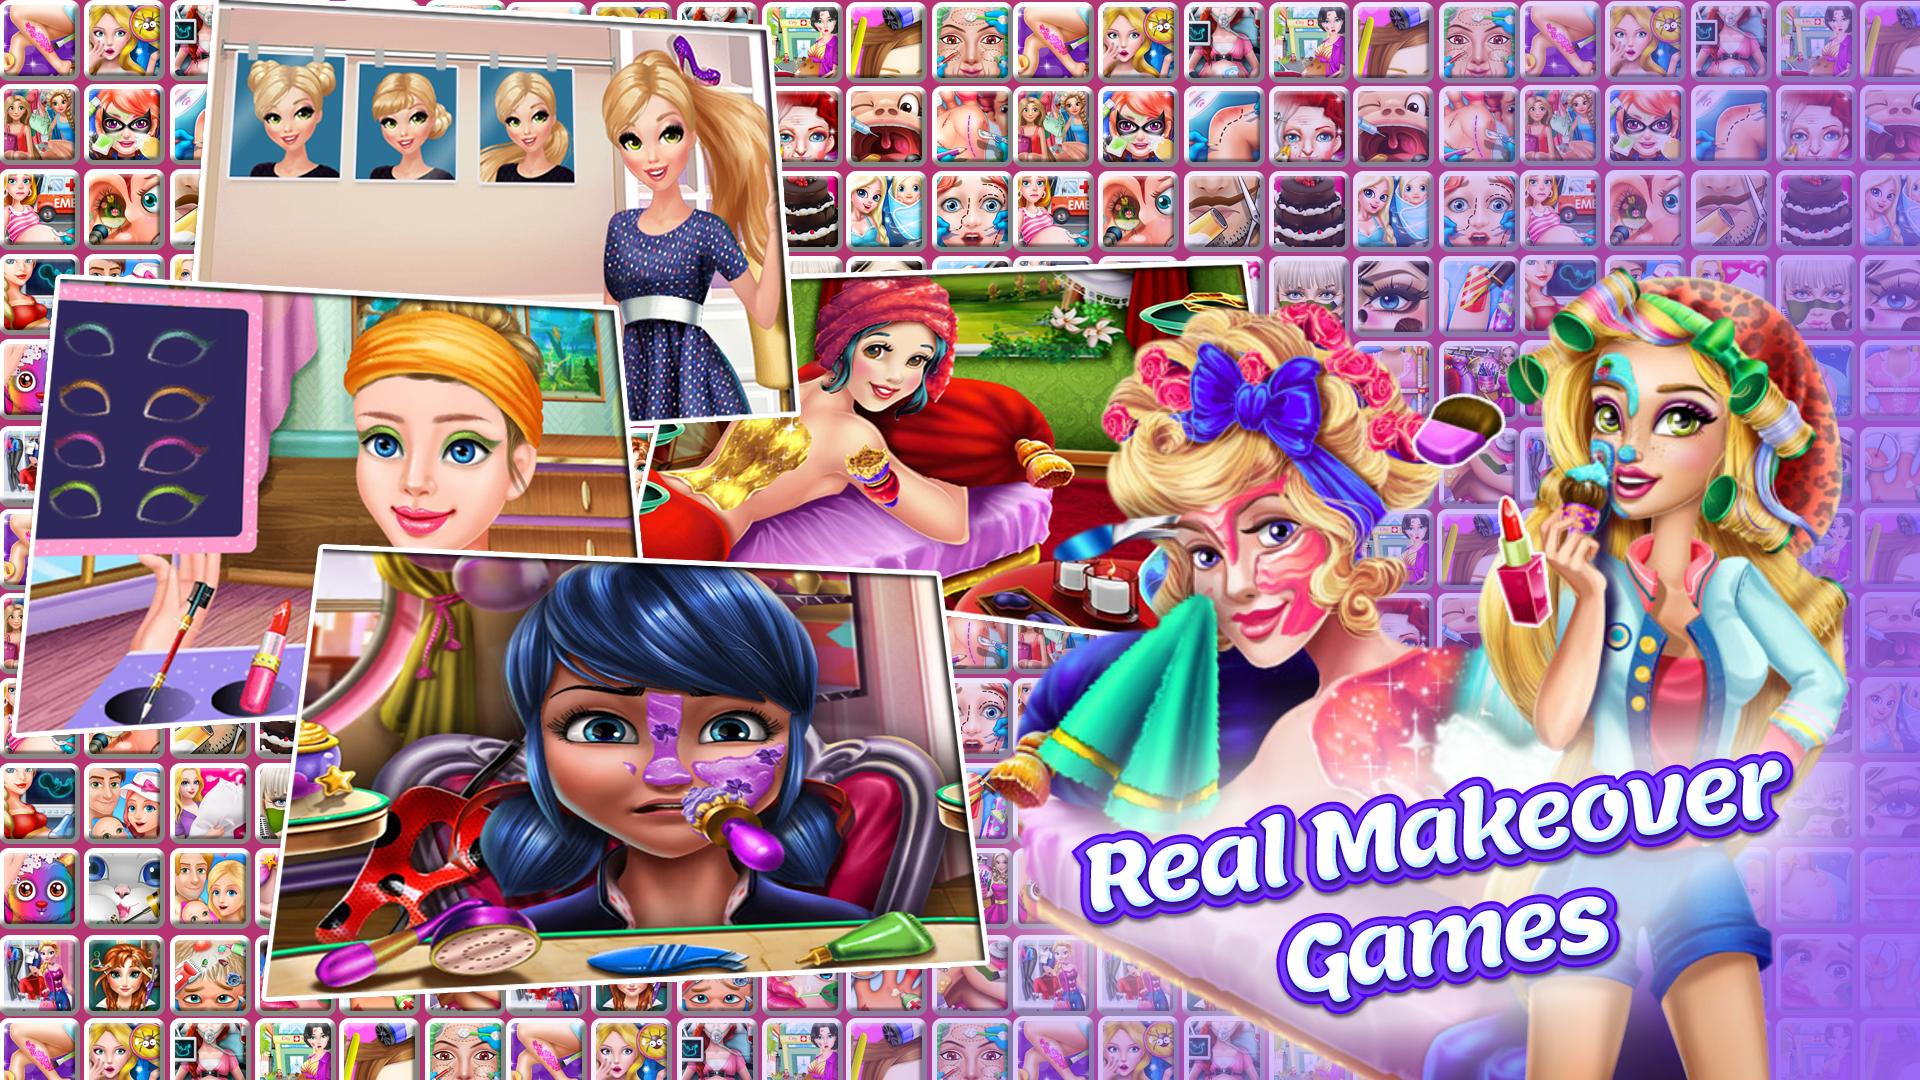 Plippa juegos de chicas for Android - APK Download